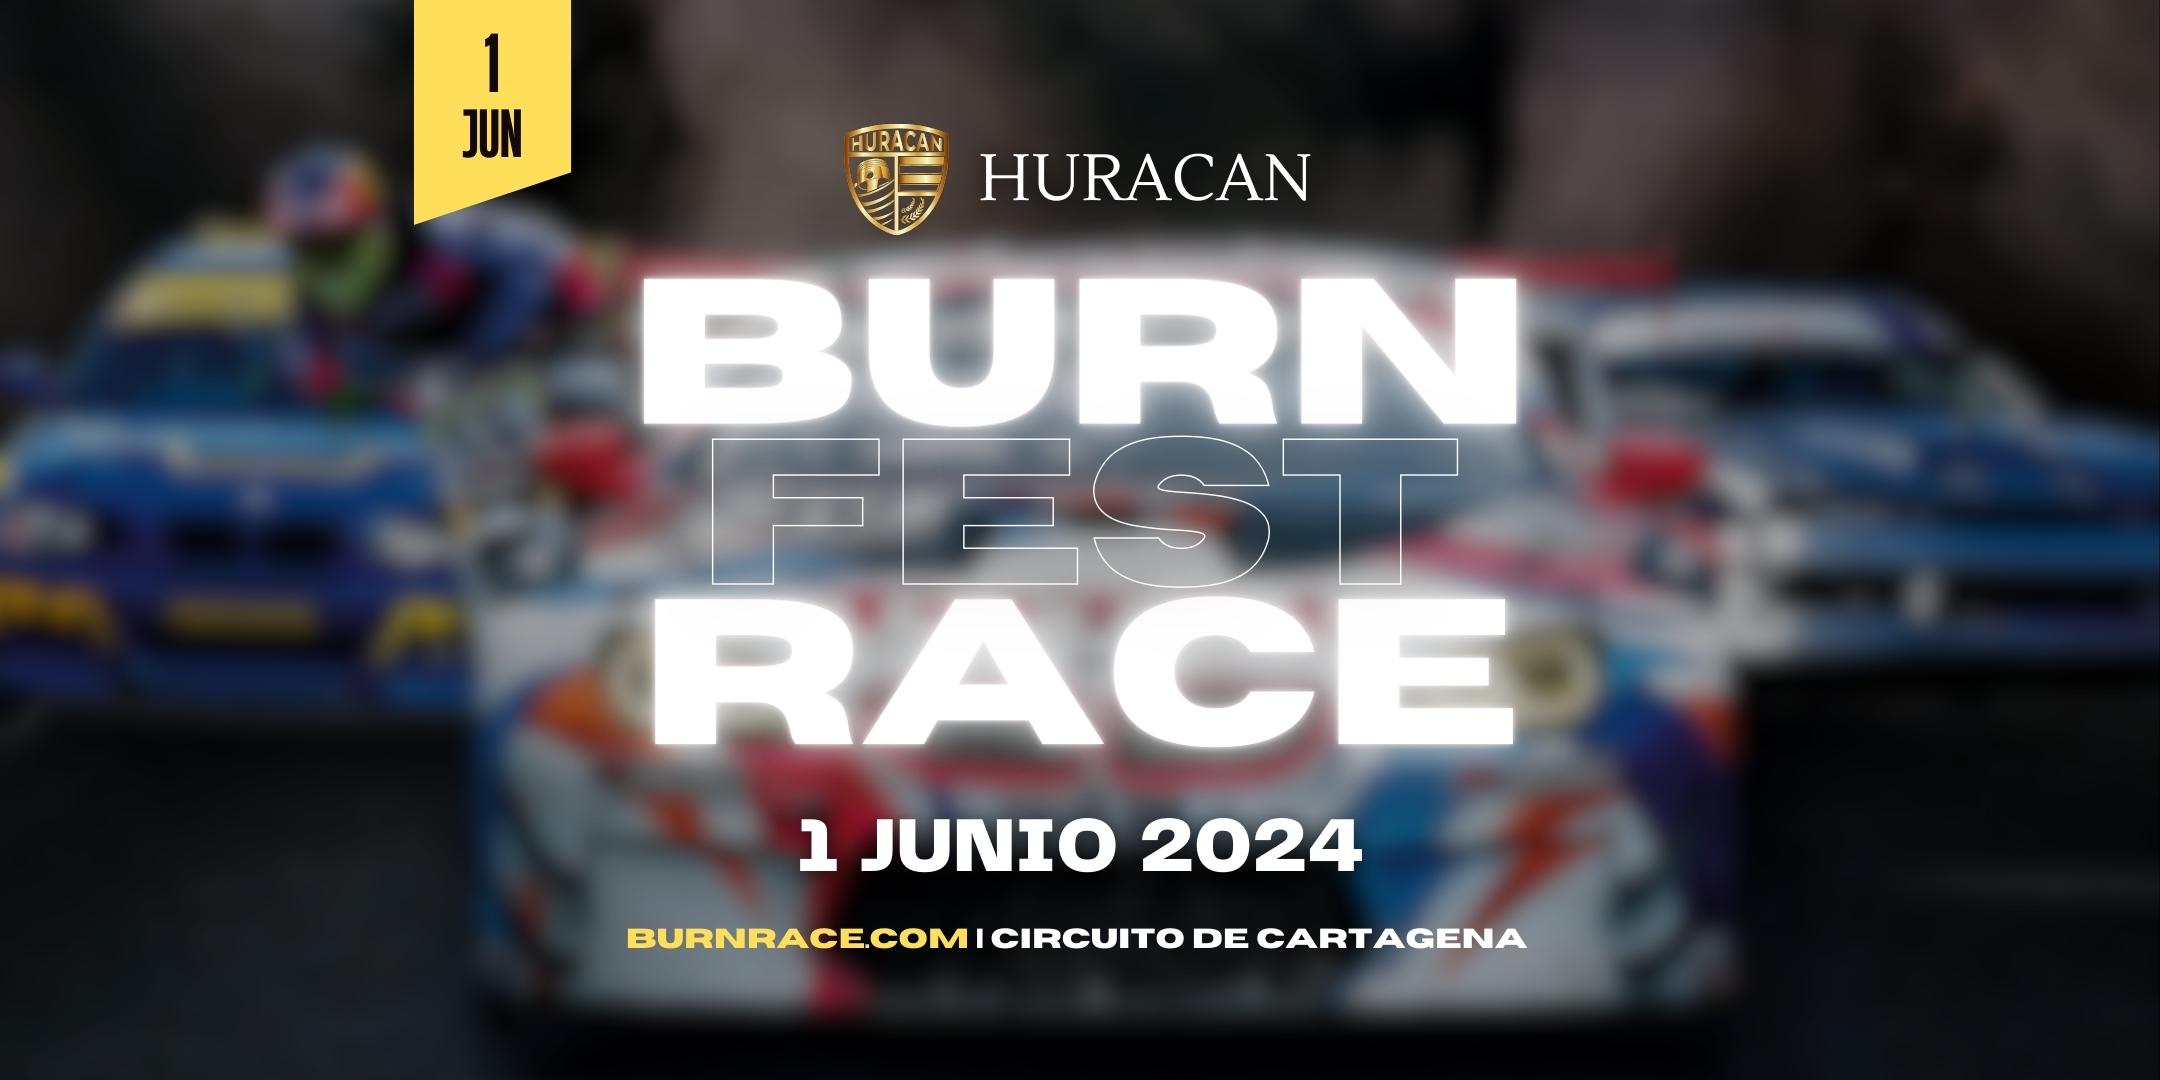 BURNRACE 01.06.2024 en el Circuito de Cartagena